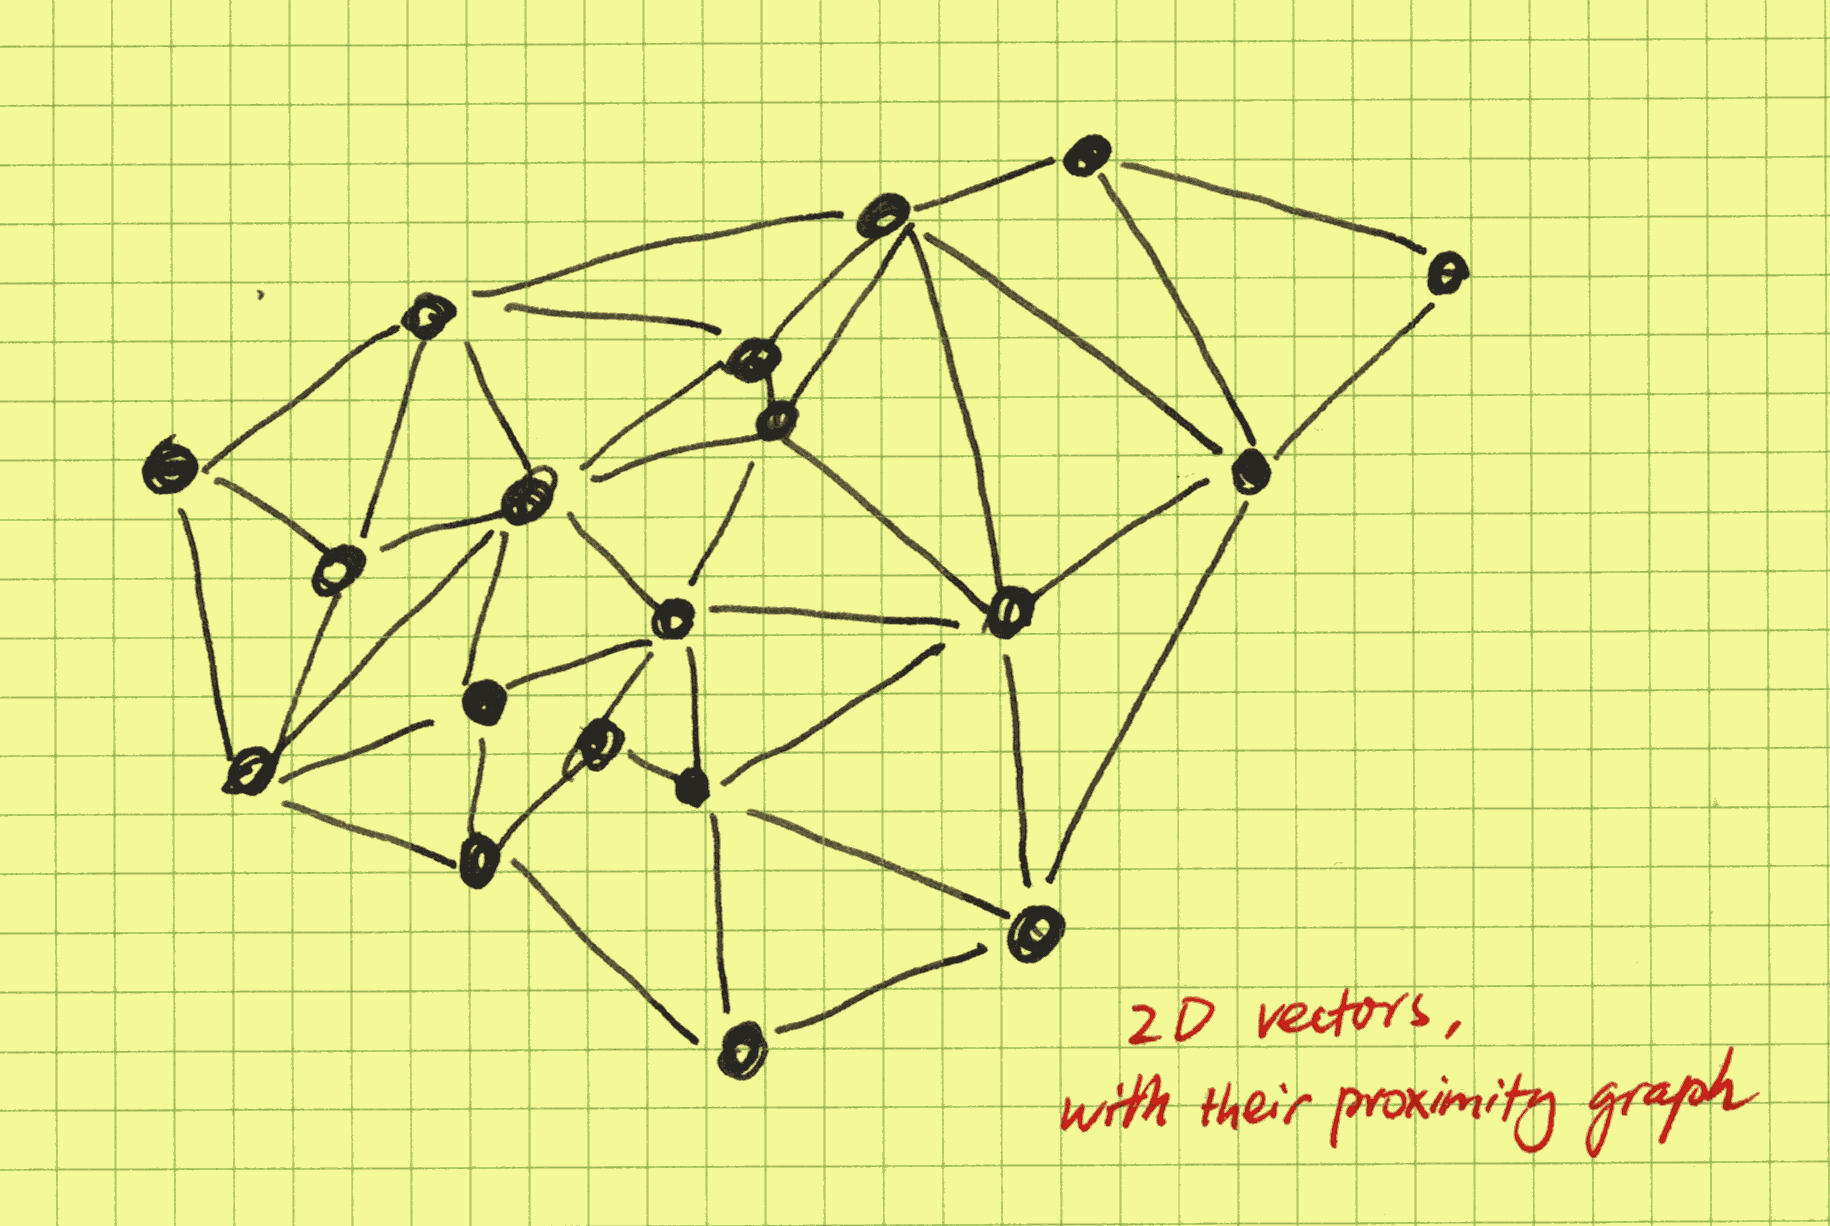 a proximity graph